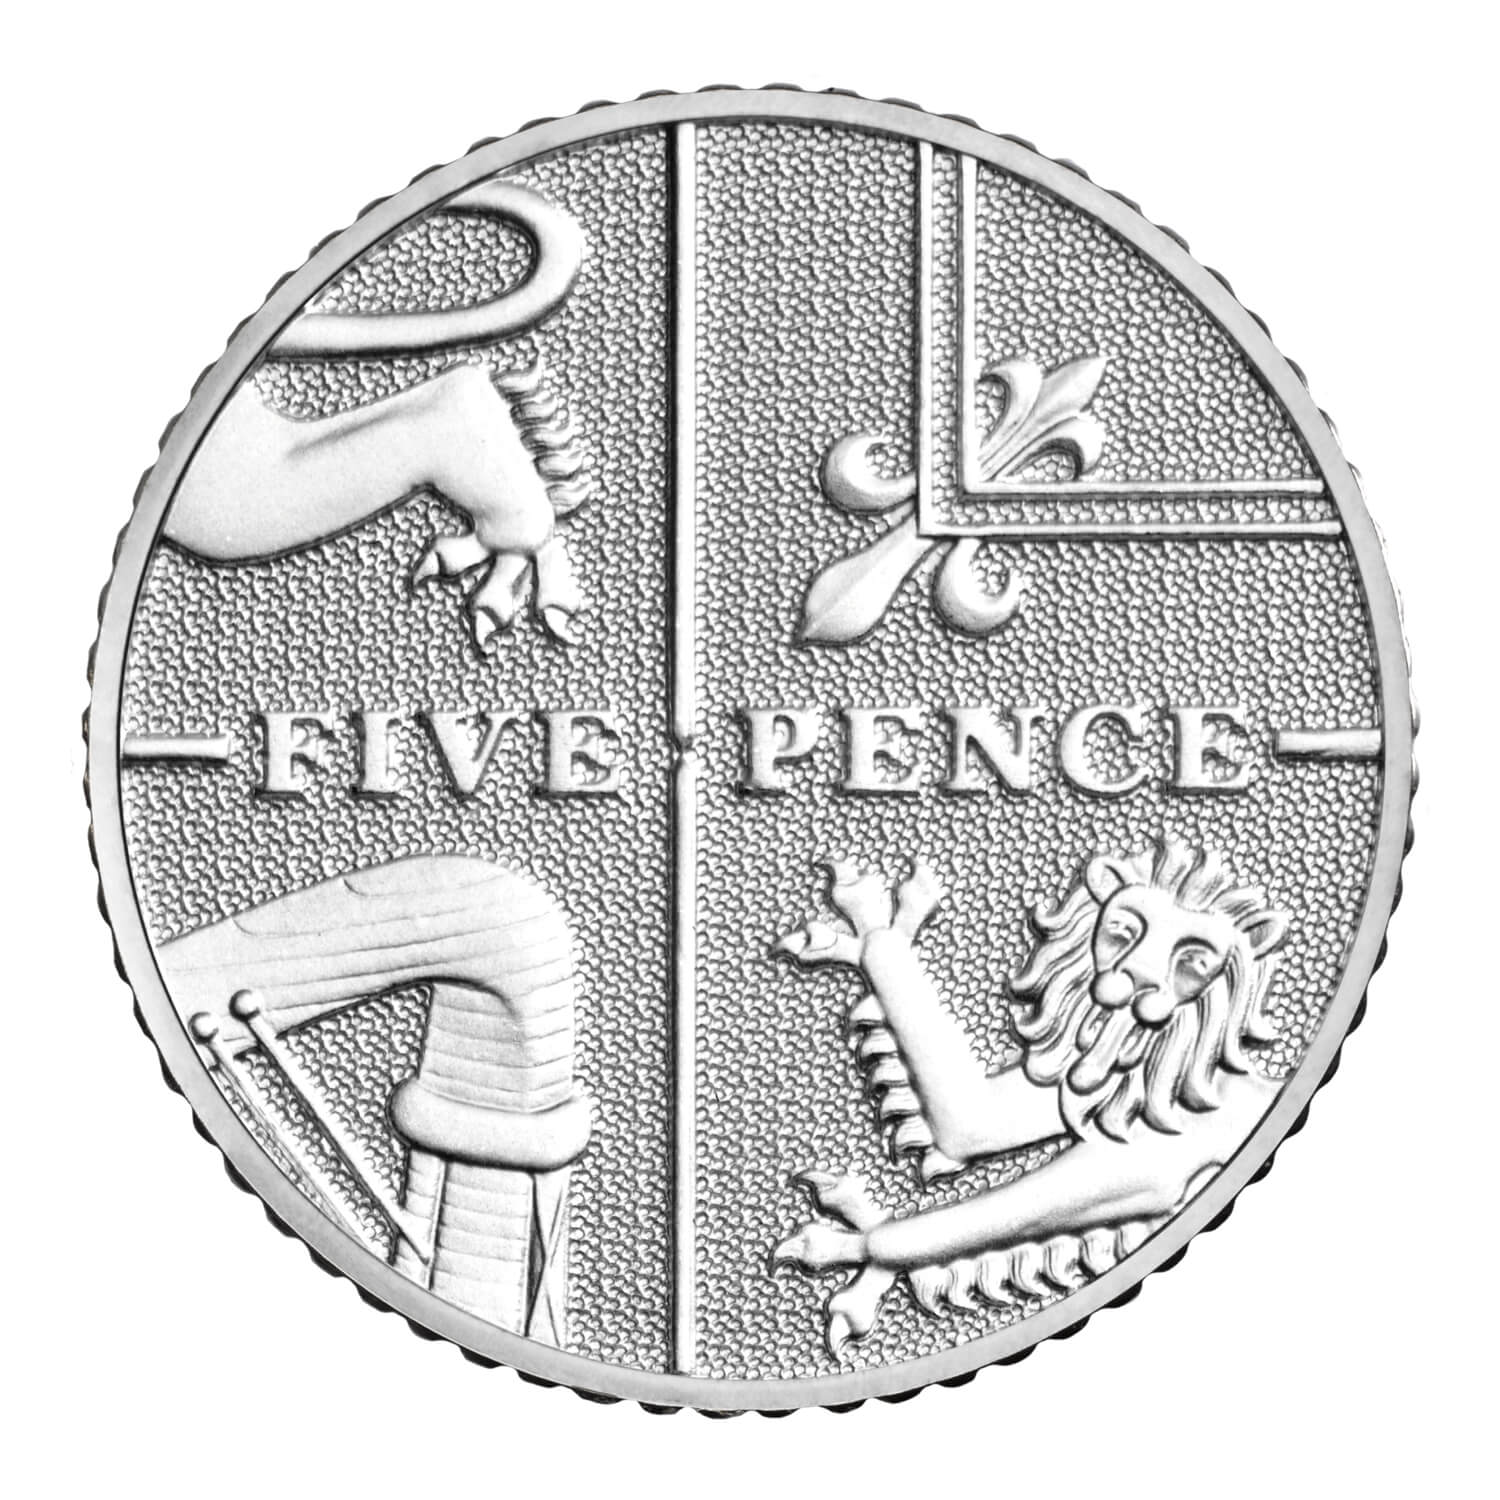 8694円 即日出荷 2014 United Kingdom Annual Coin Set